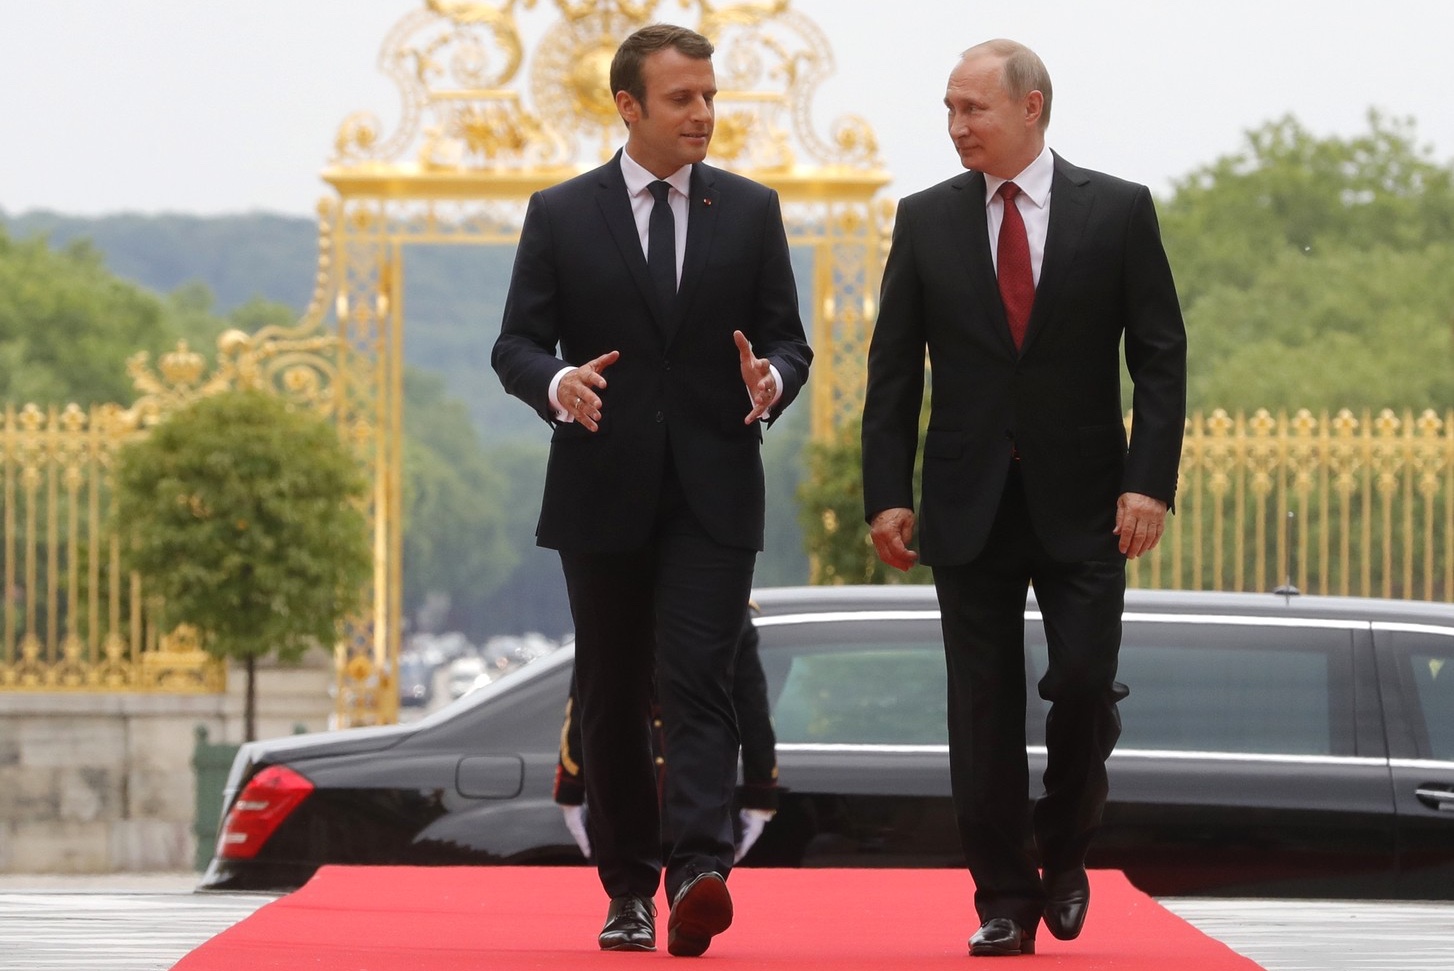 President Macron meets with President Putin